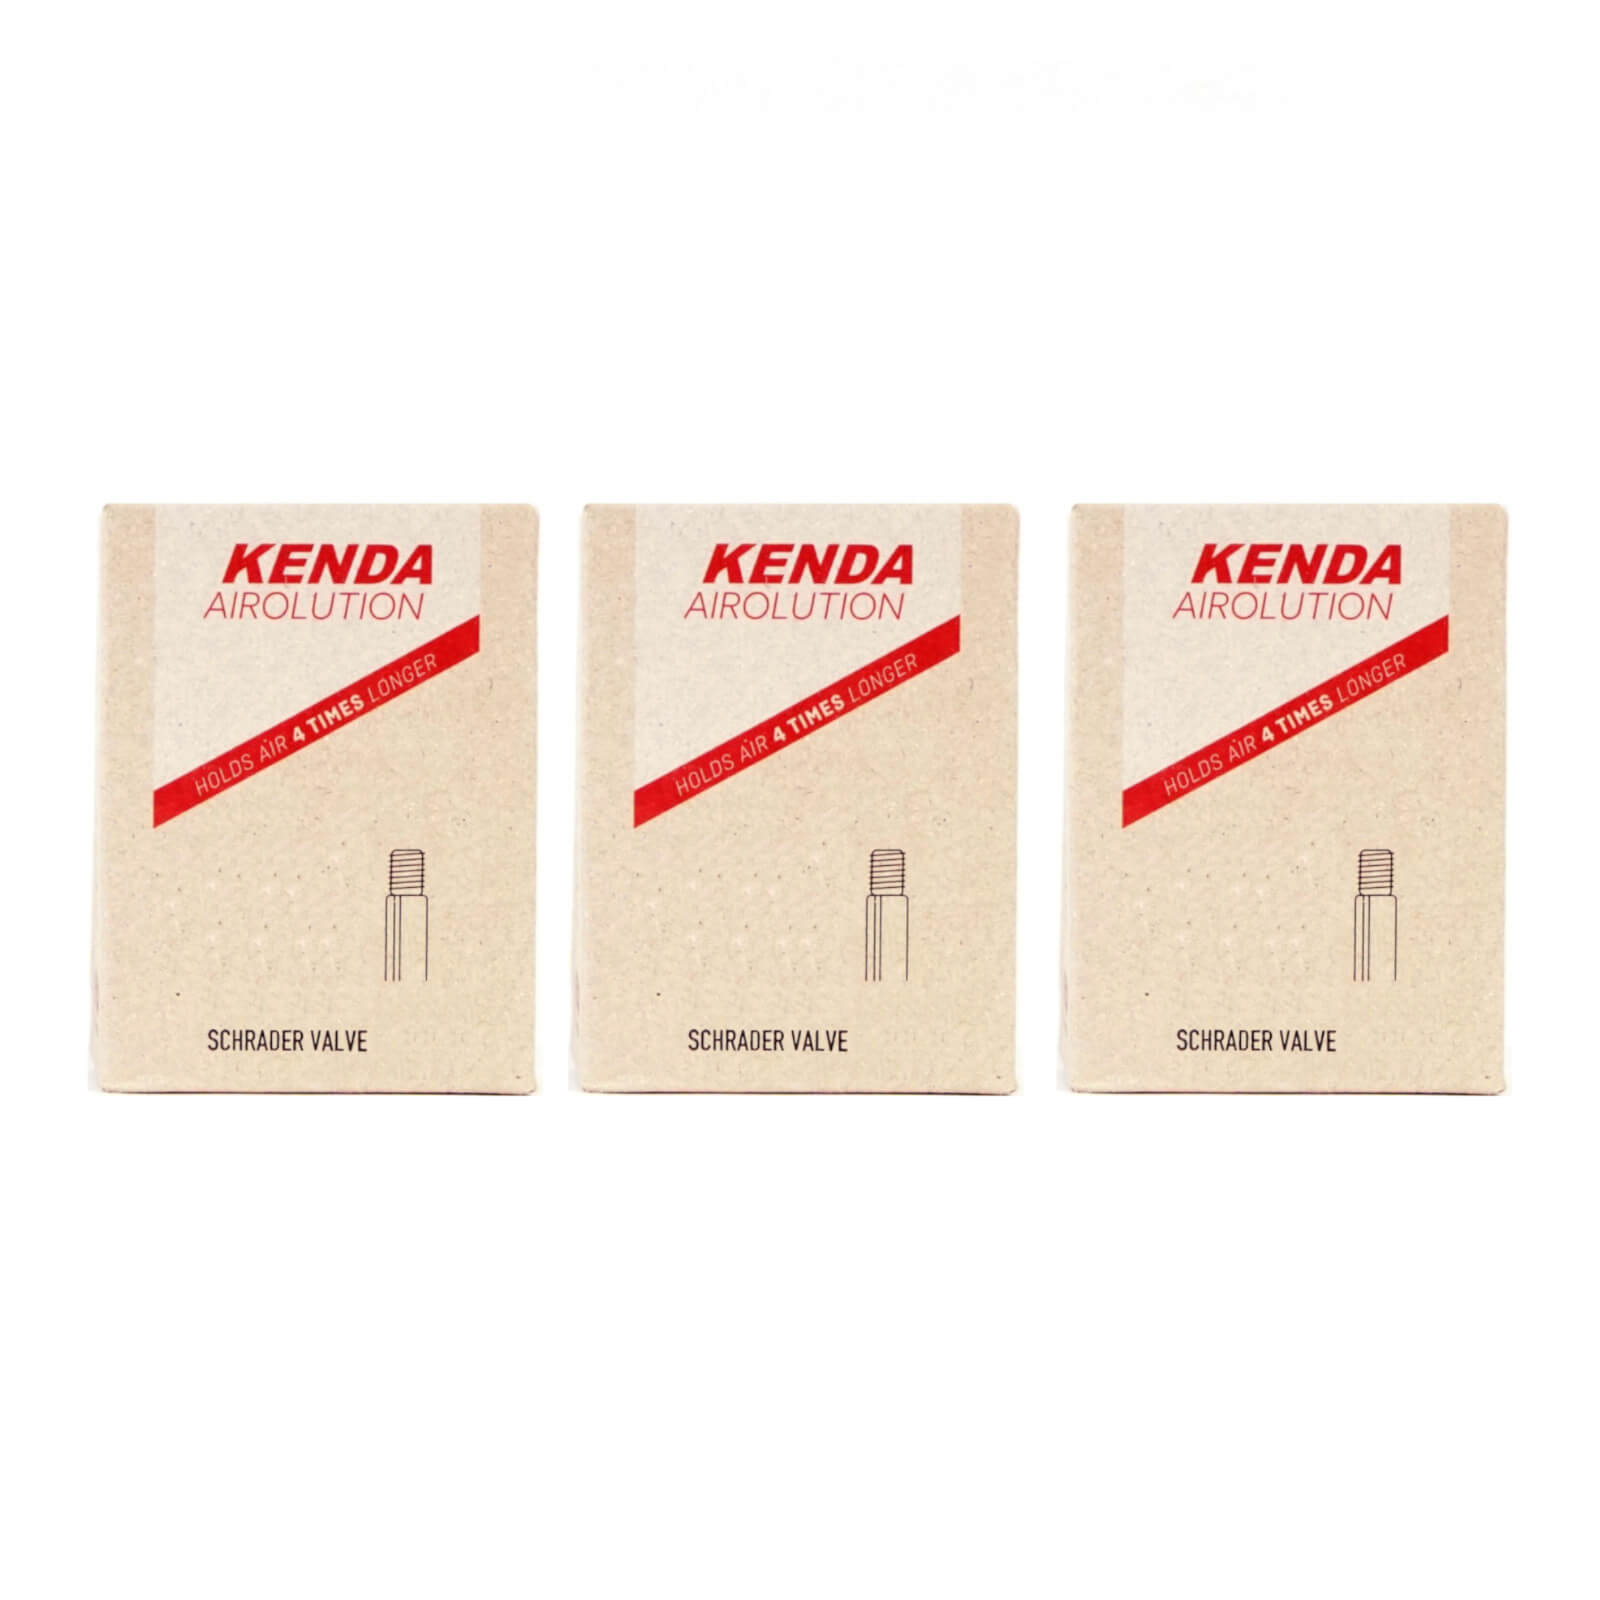 Kenda Airolution 20x2.0-2.4" 20 Inch Schrader Valve Bike Inner Tube Pack of 3